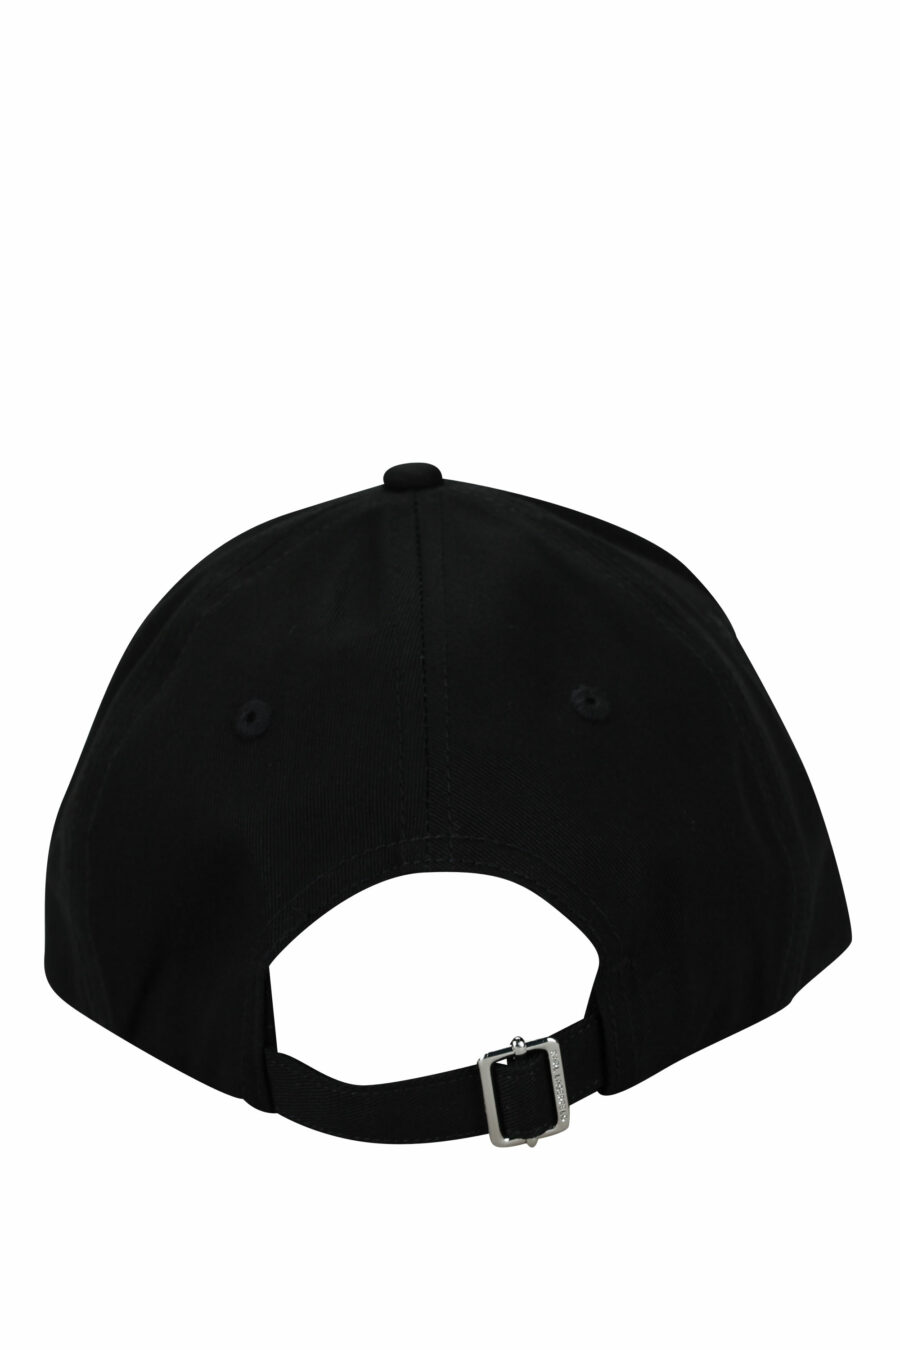 Gorra negra con logo "essential" y linea blanca - 8720744673972 1